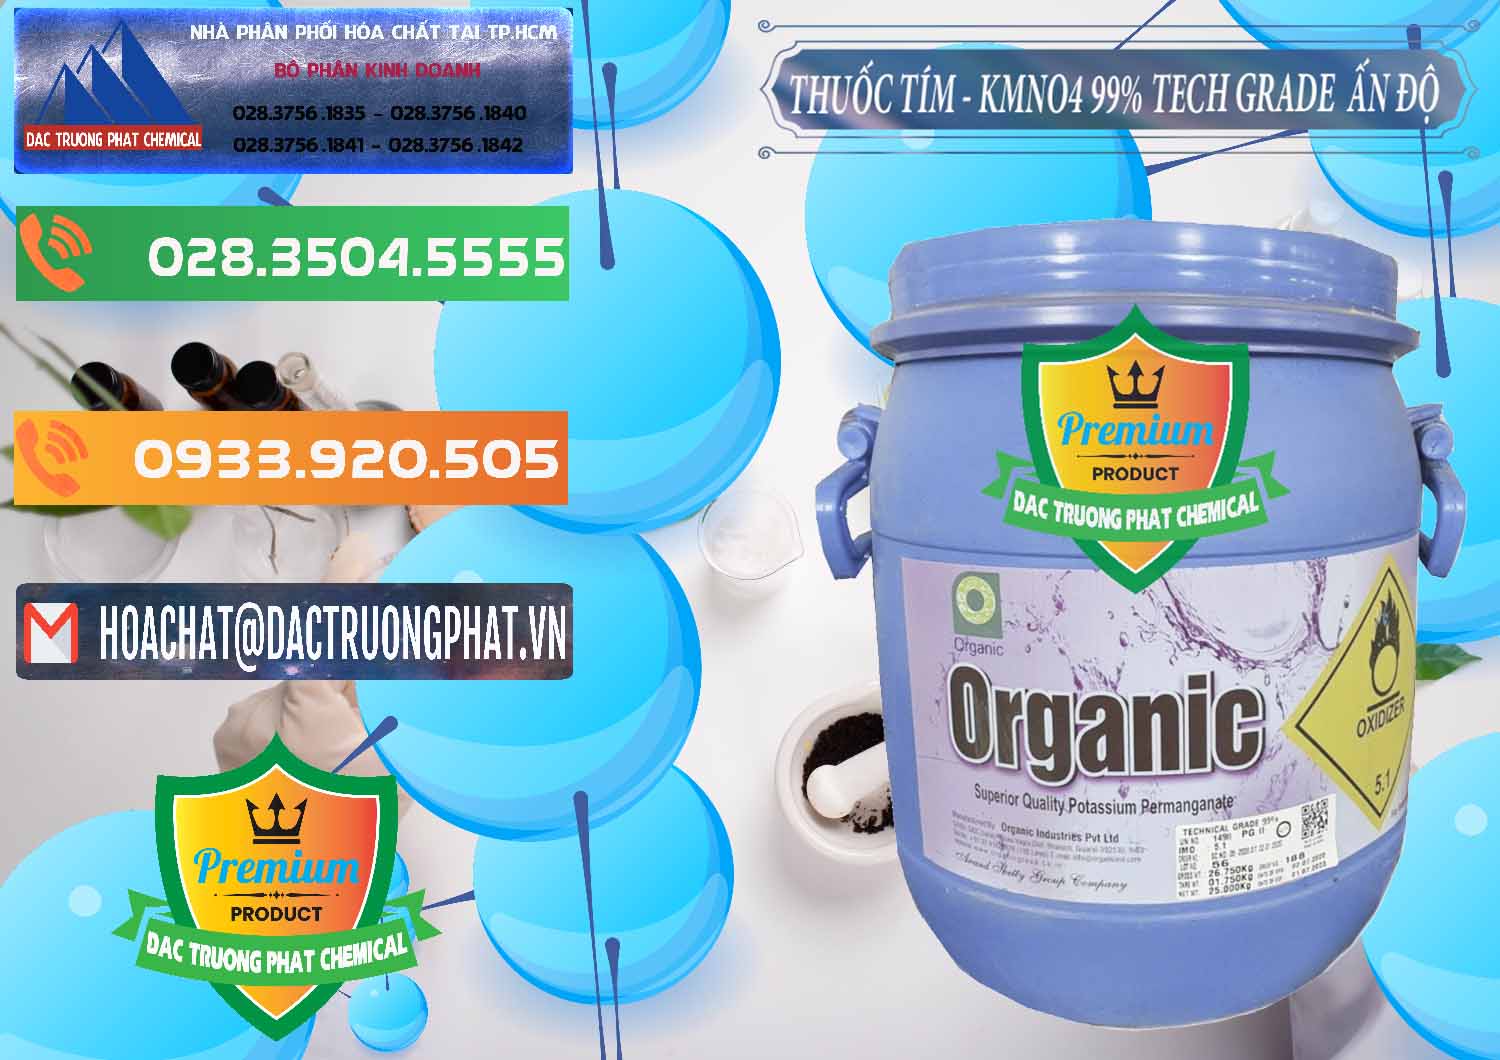 Cty chuyên nhập khẩu ( bán ) Thuốc Tím - KMNO4 99% Organic Group Ấn Độ India - 0250 - Cty chuyên bán & cung cấp hóa chất tại TP.HCM - hoachatxulynuoc.com.vn